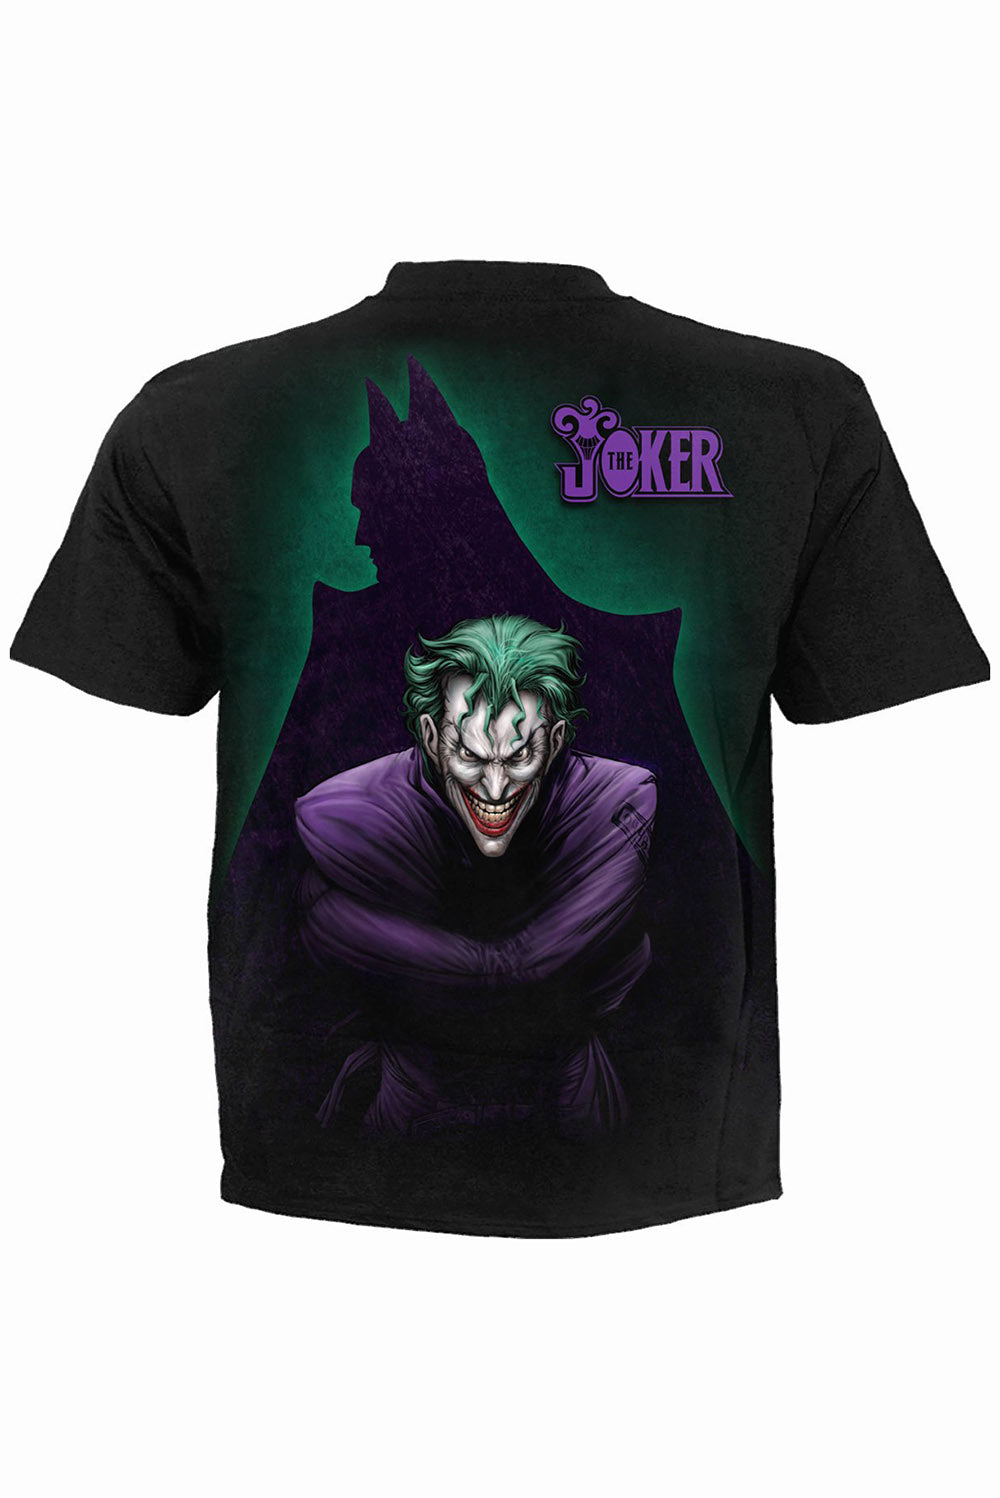 Mens Joker Freak T-Shirt